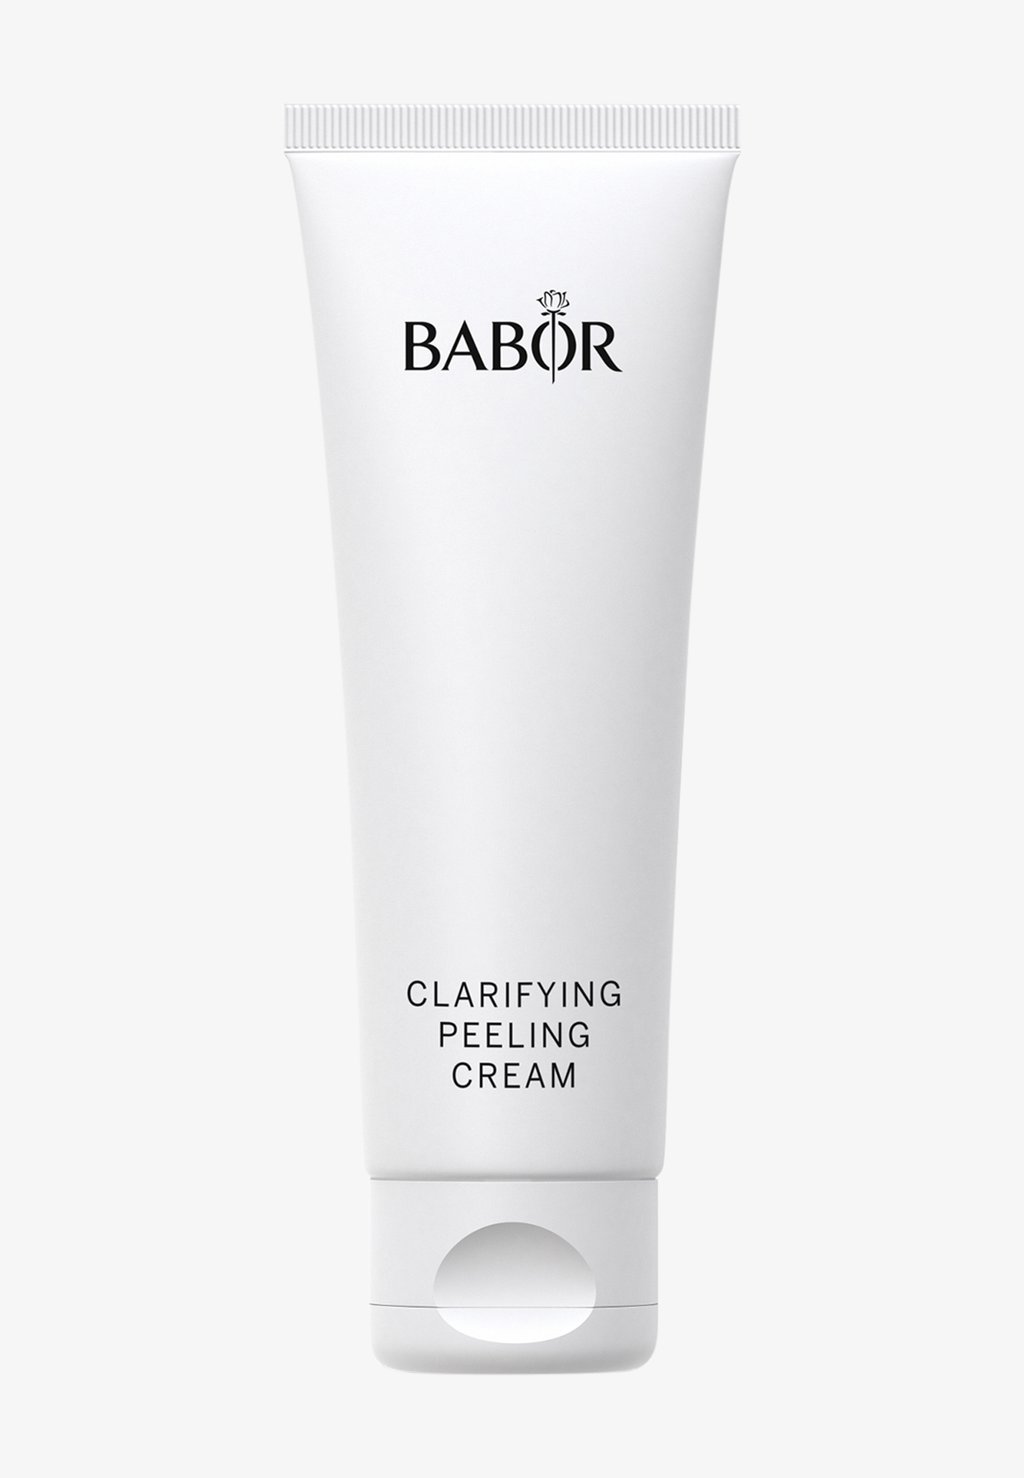 пилинг крем для глубокого очищения babor clarifying peeling cream 50 мл Дневной крем Clarifying Peeling Cream BABOR